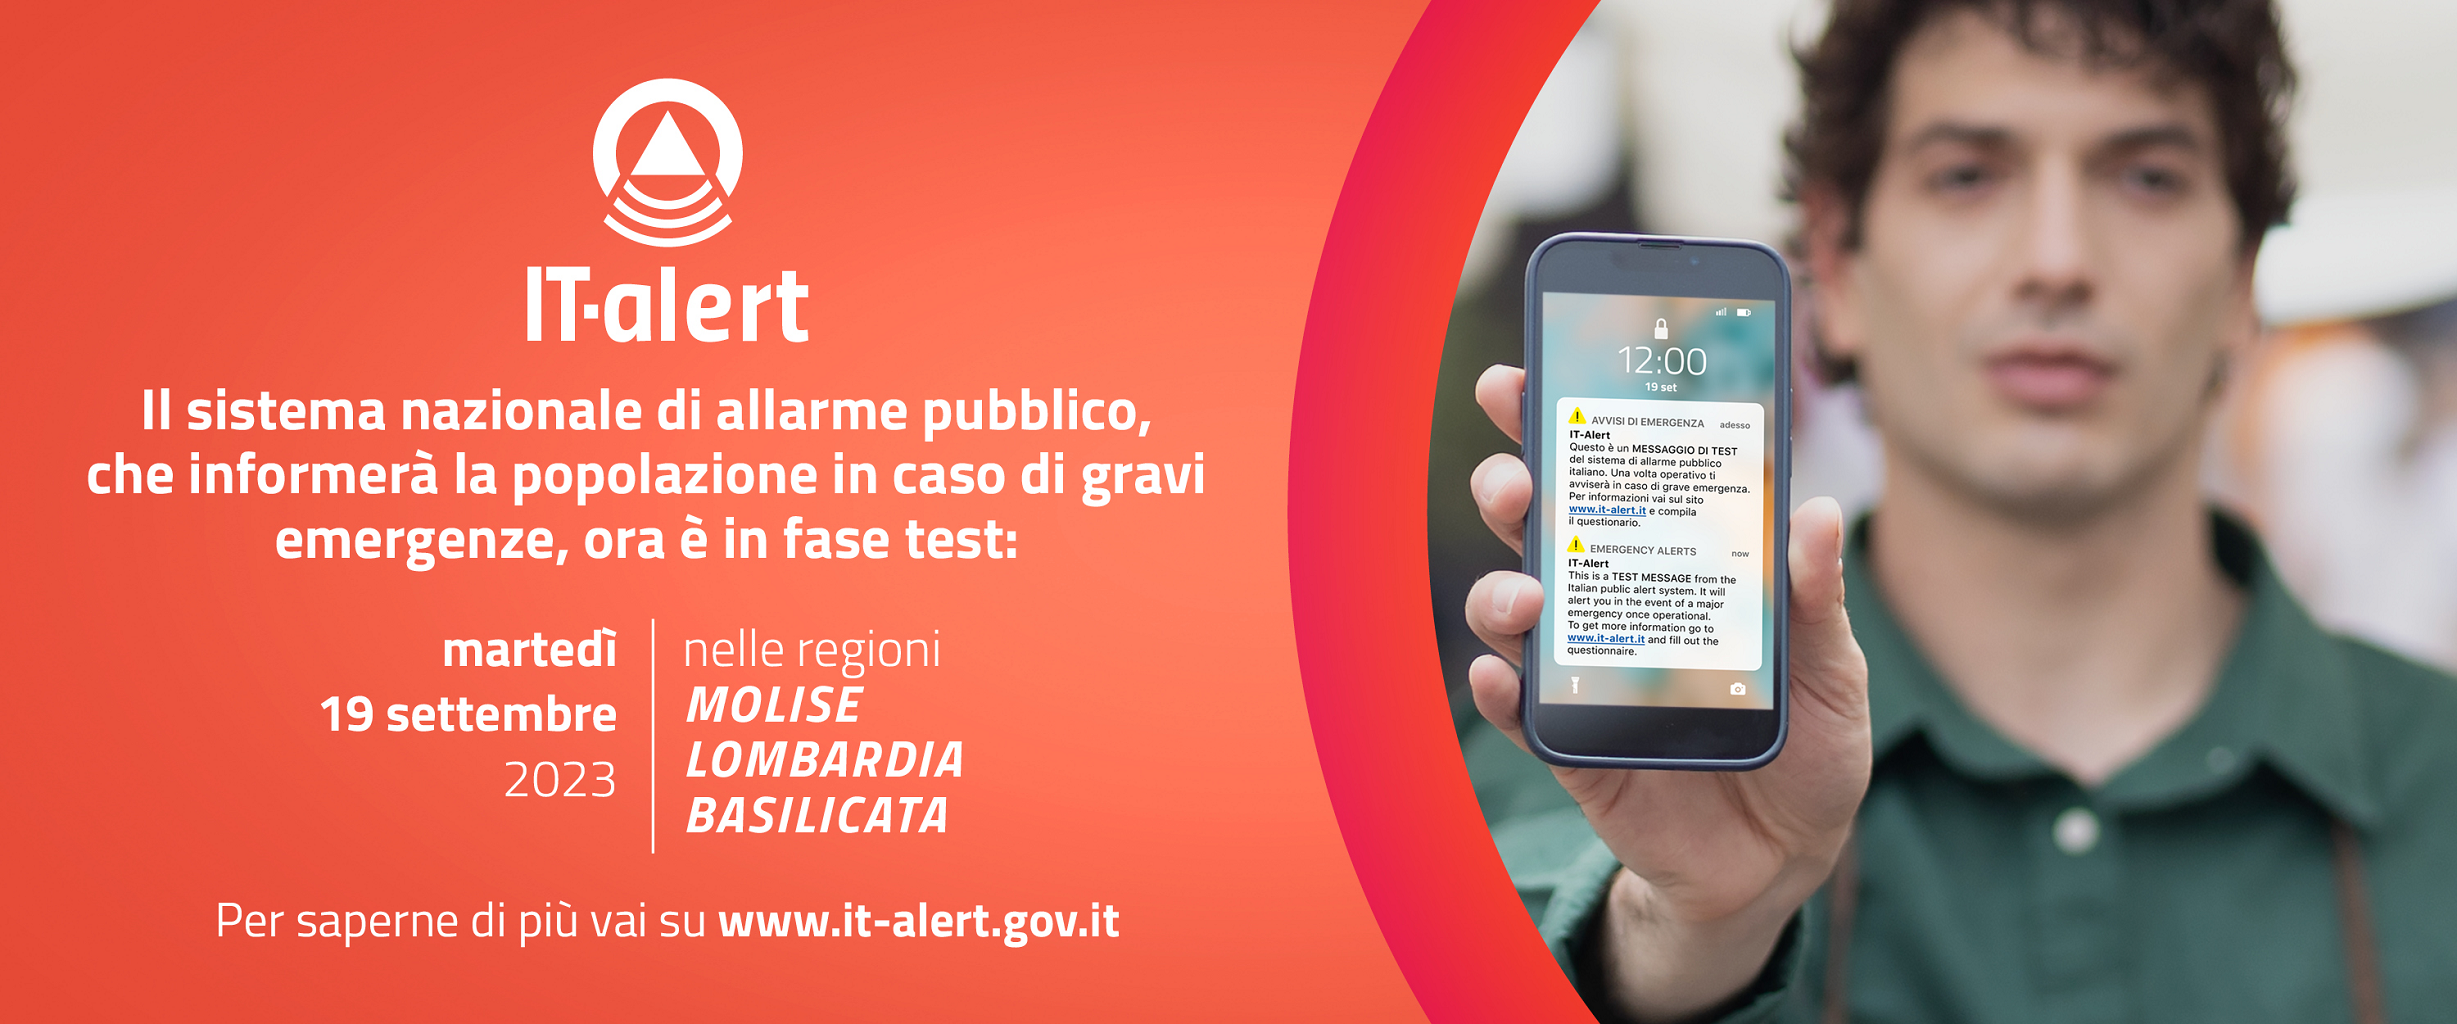 Nuovo sistema di allarme pubblico IT-alert: test in Lombardia il 19 settembre